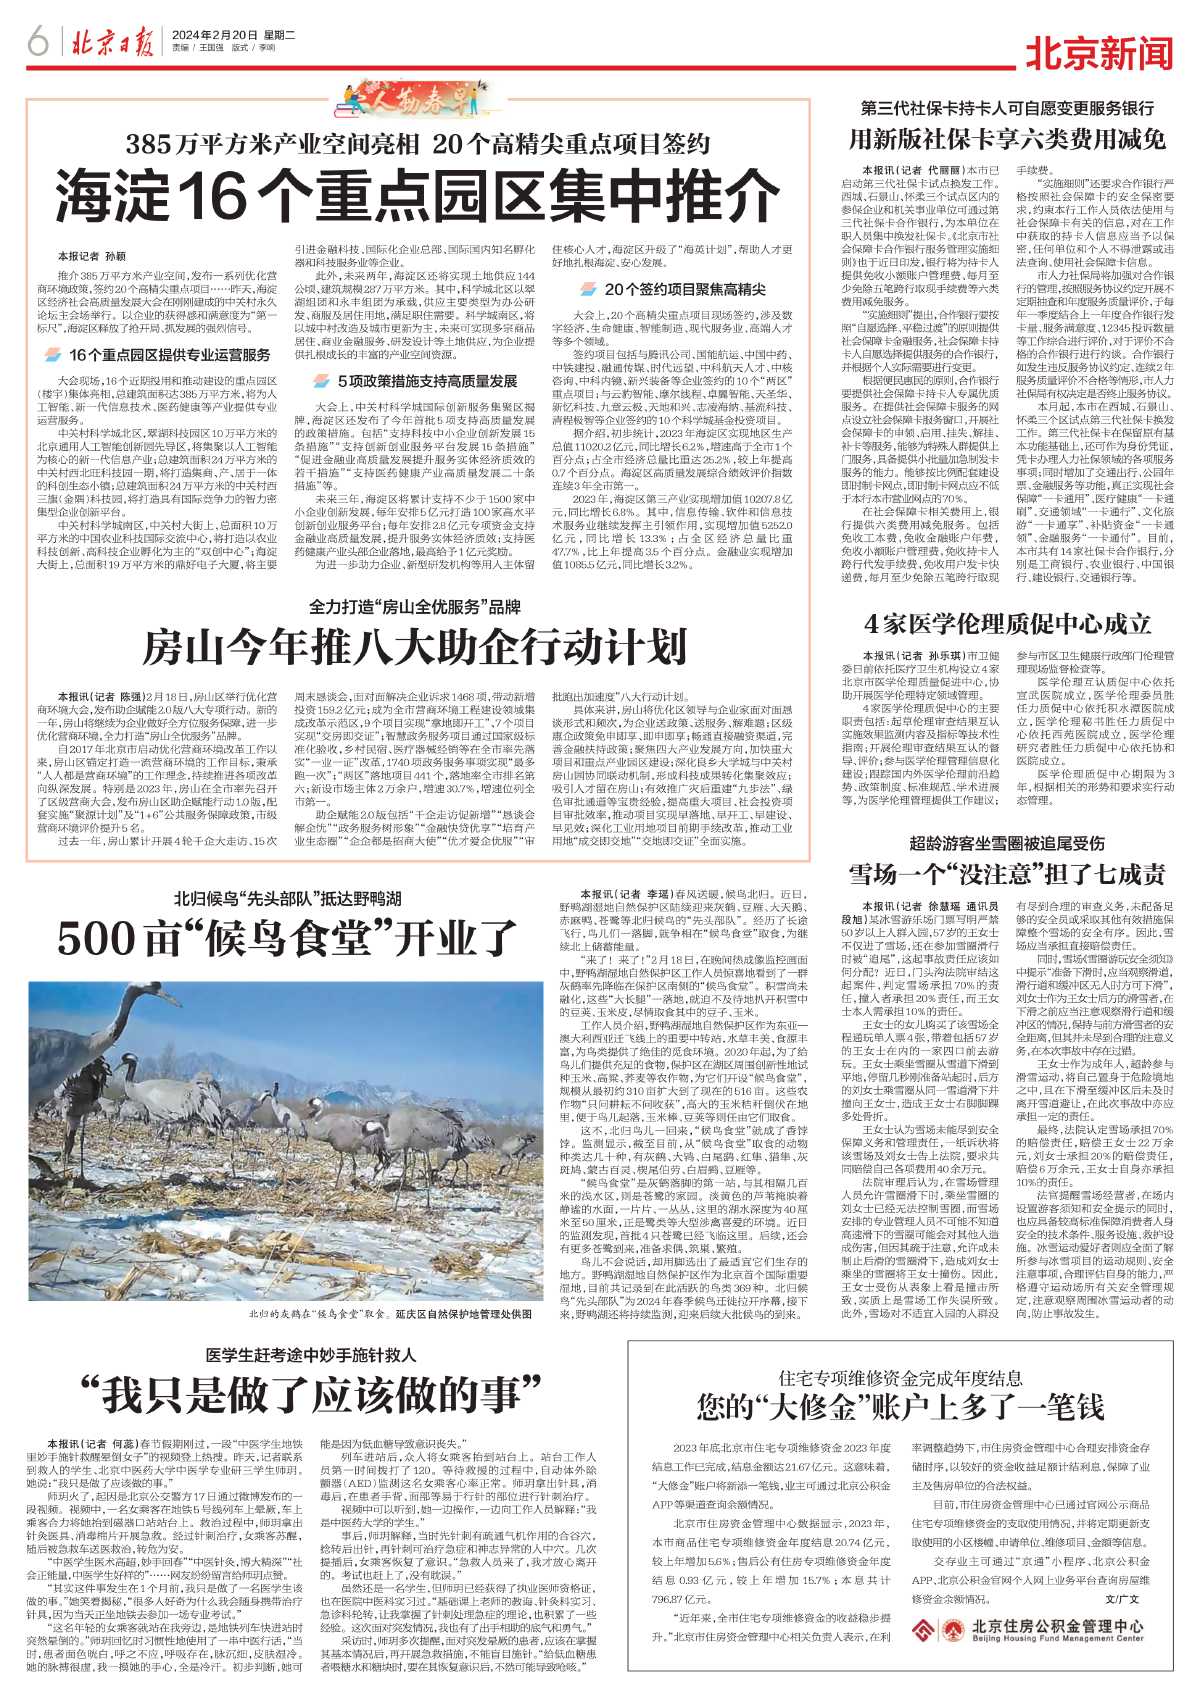 0220北京日报-500亩“候鸟食堂”开业了.jpg